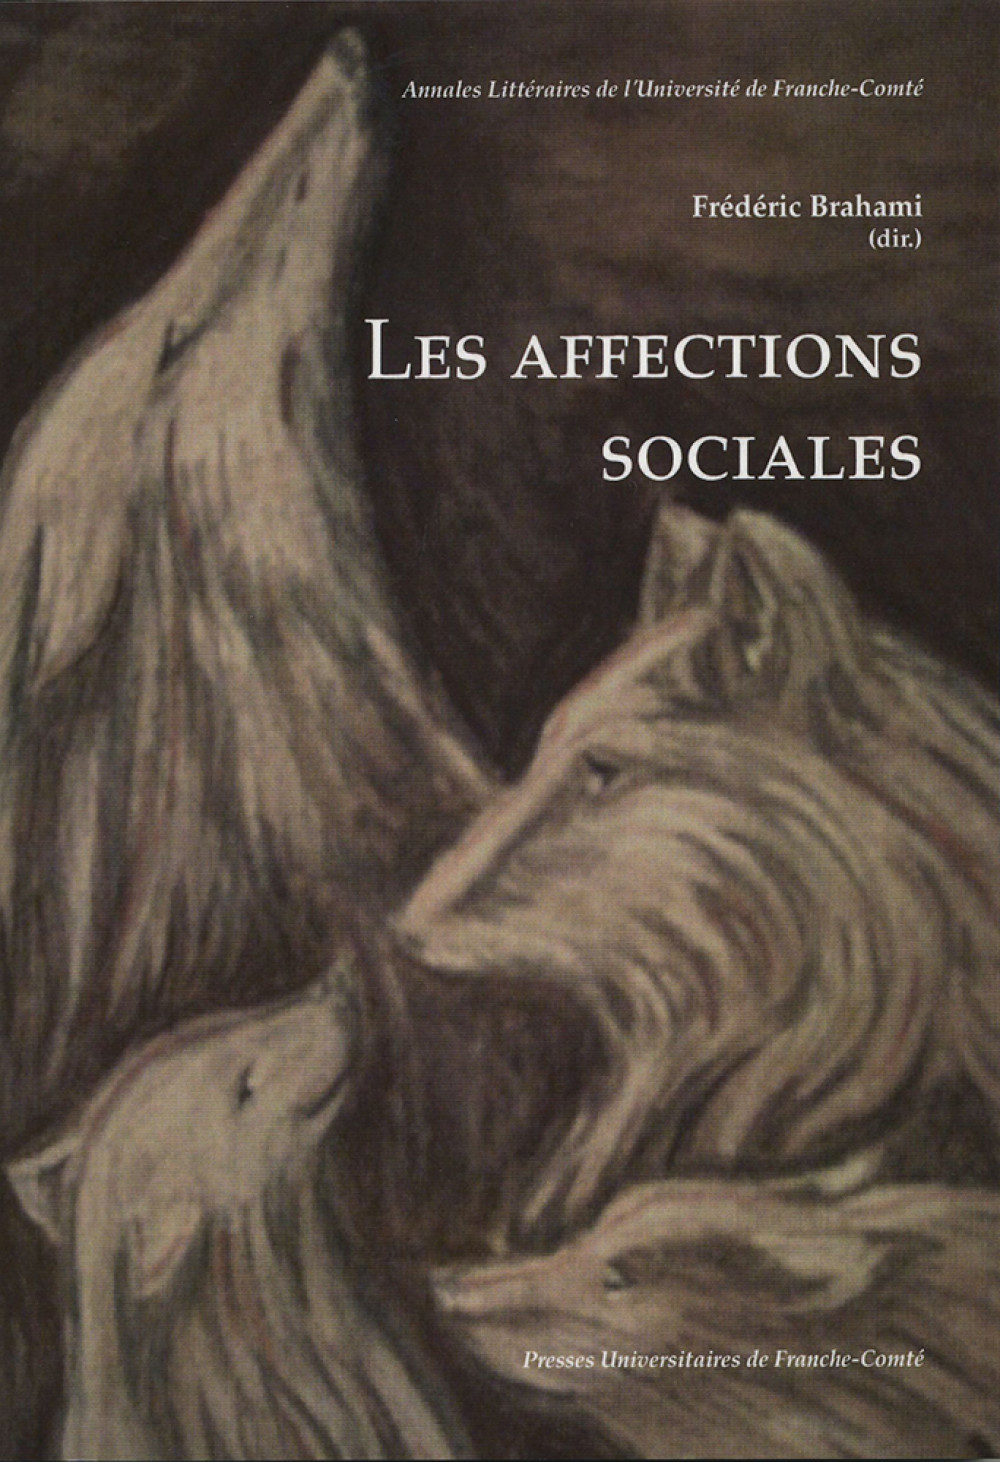 Les affections sociales